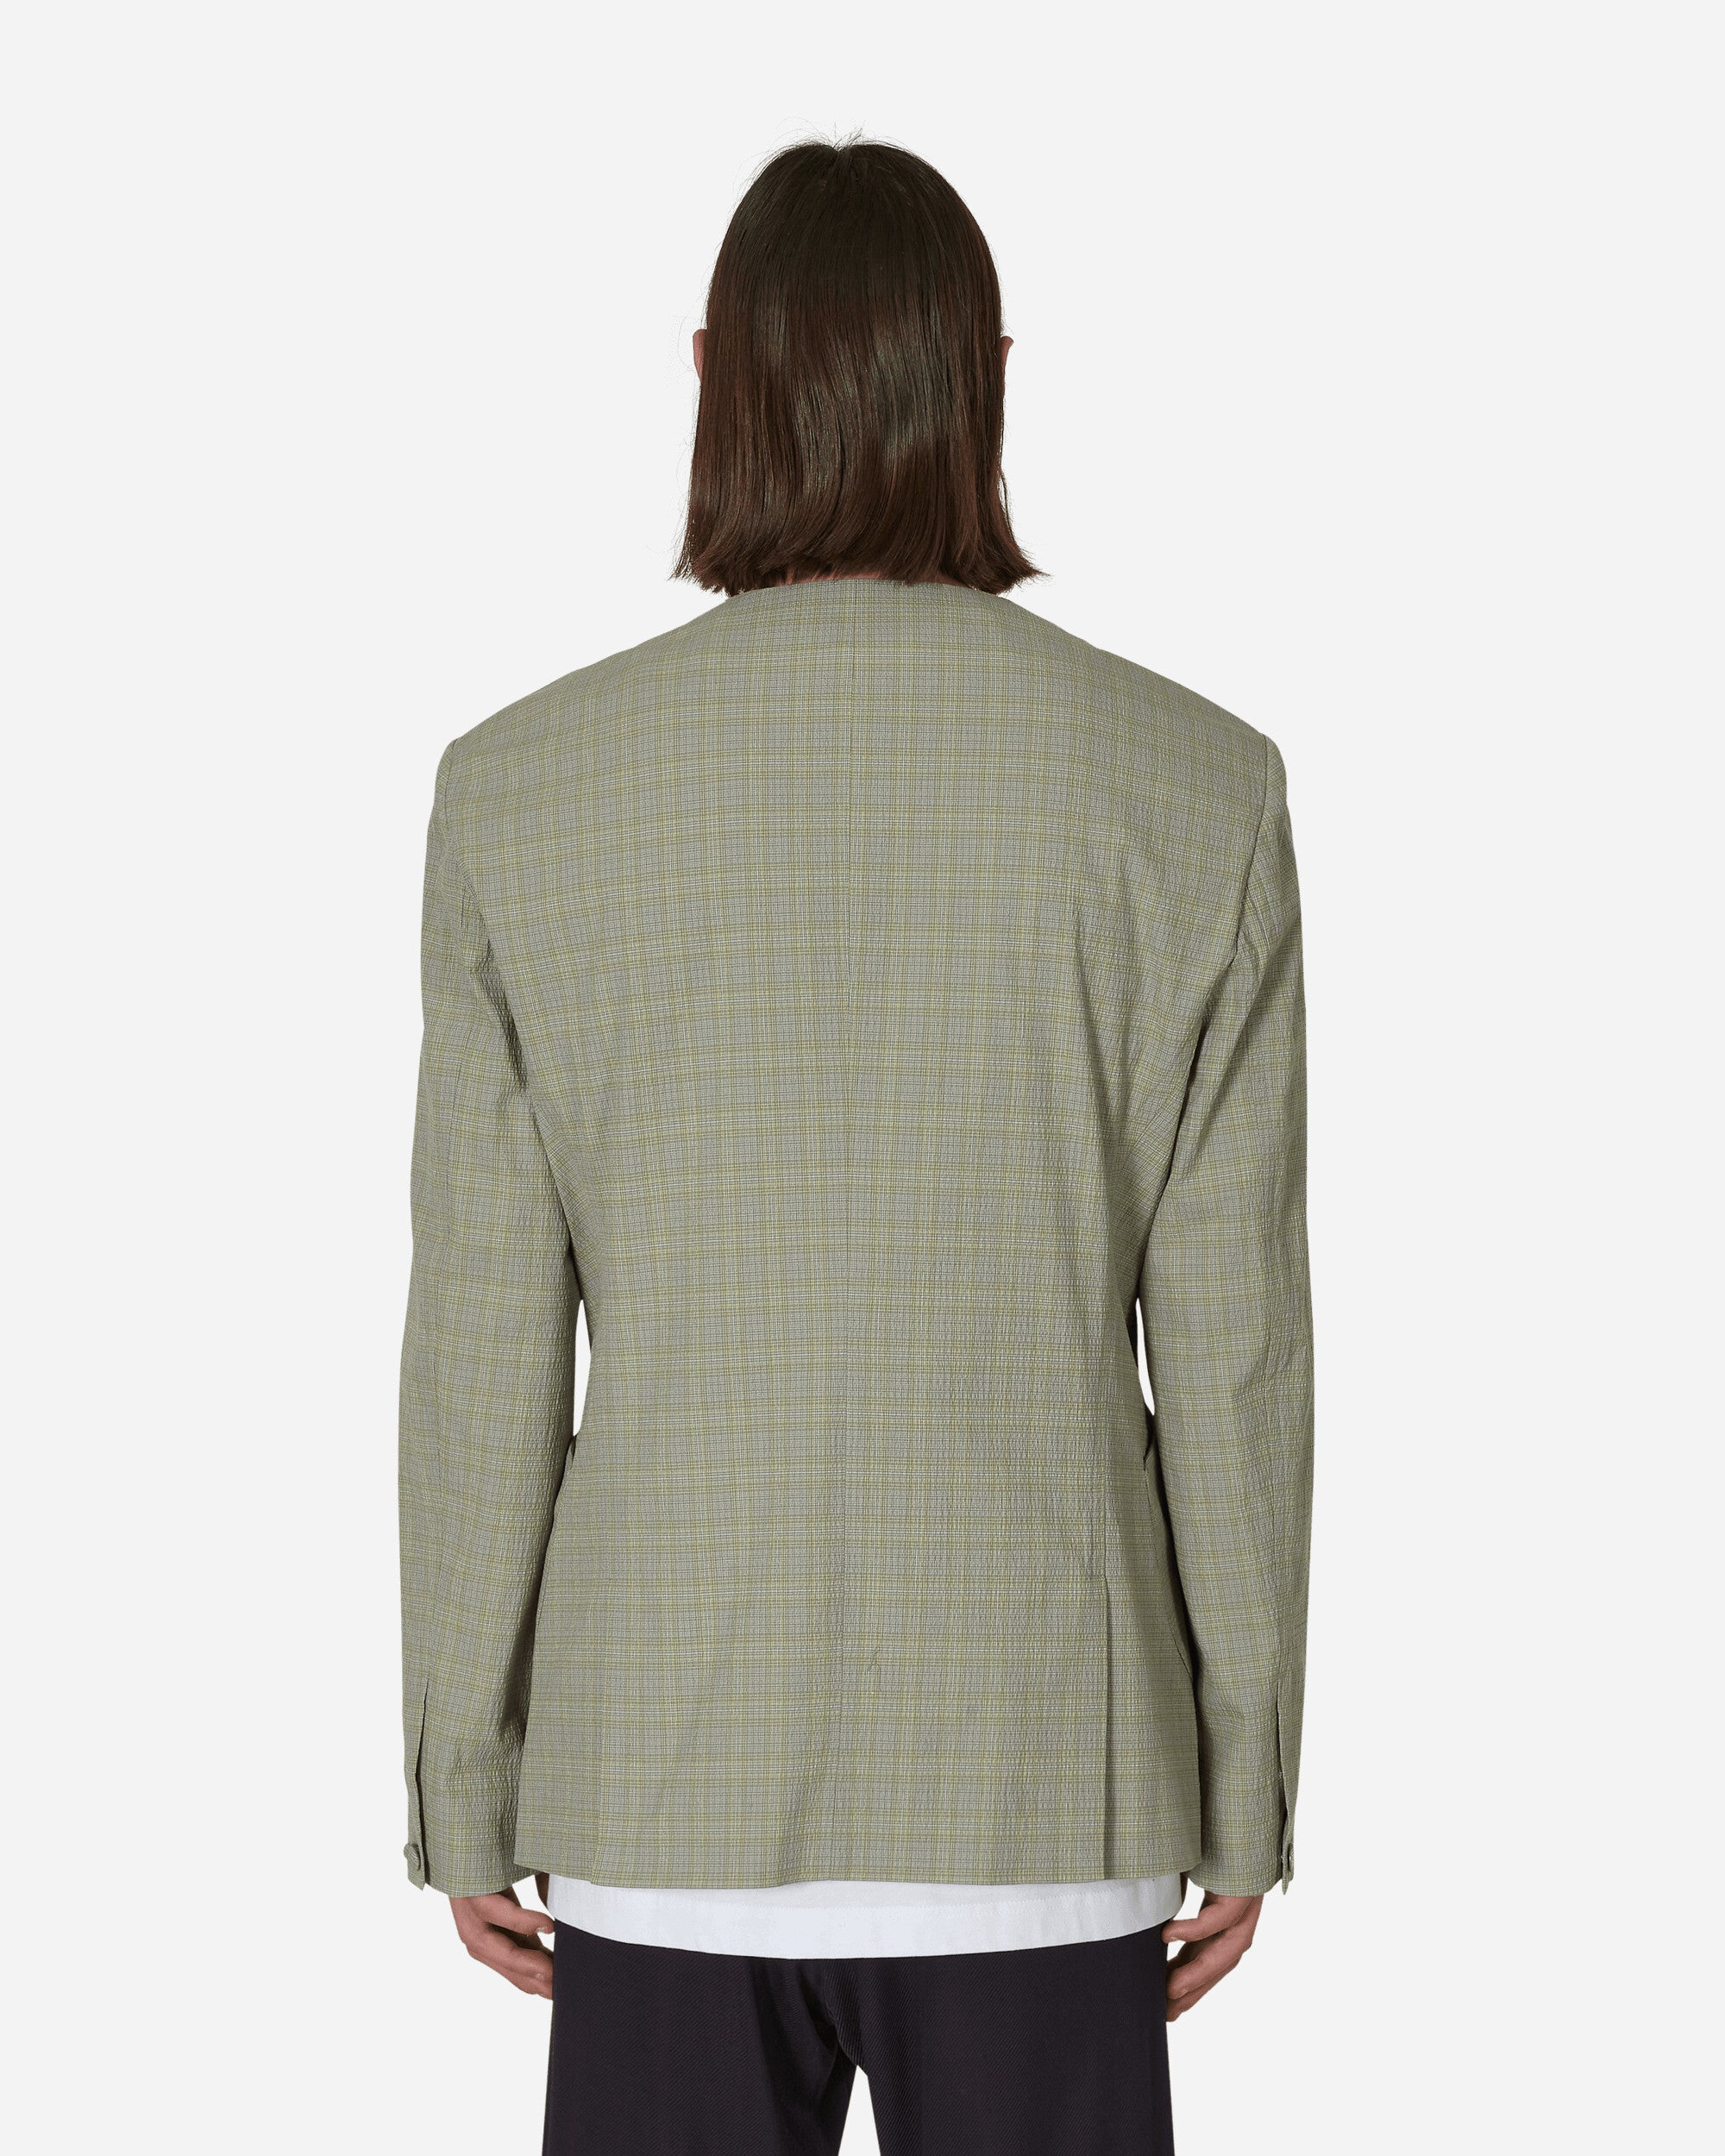 Kiko Kostadinov Oma Reversible Blazer Stone Yellow Check  Coats and Jackets Blazers KKSS23J03-36  001